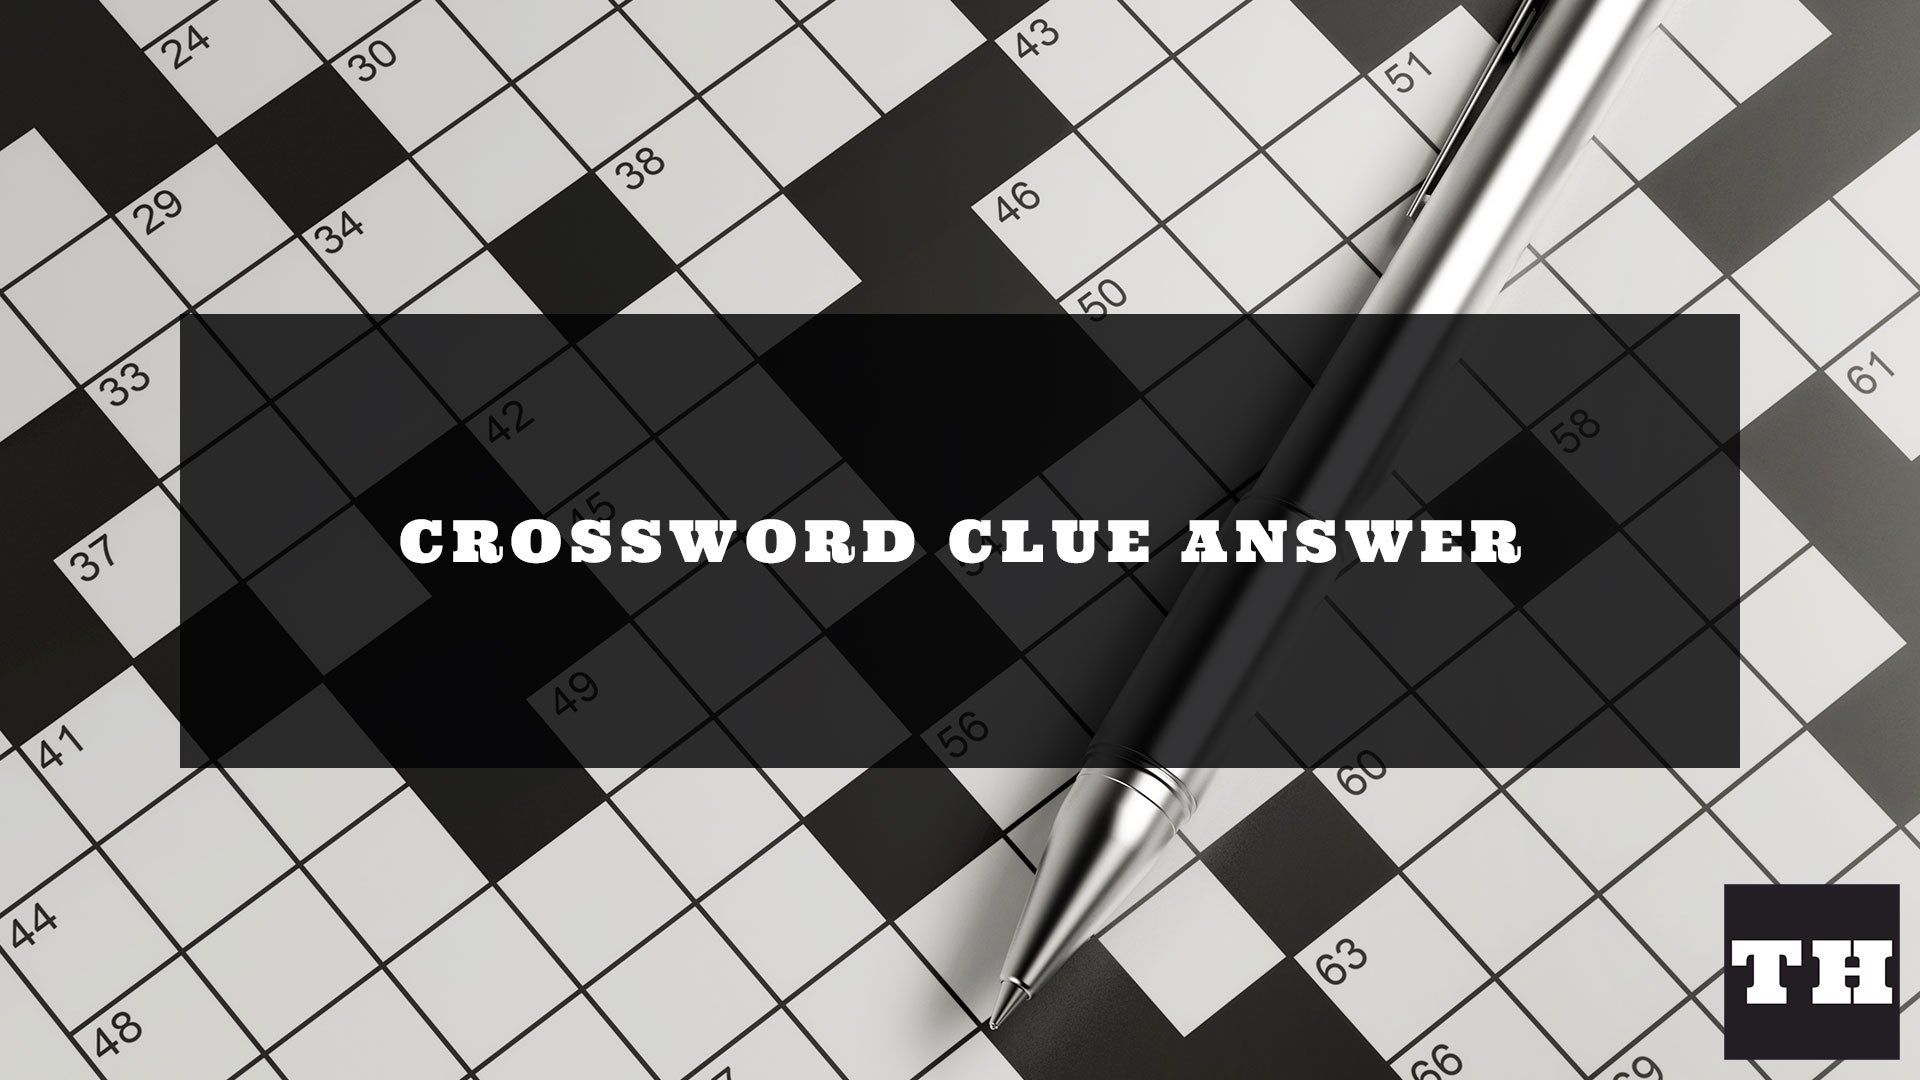 III, in Rome Crossword Clue